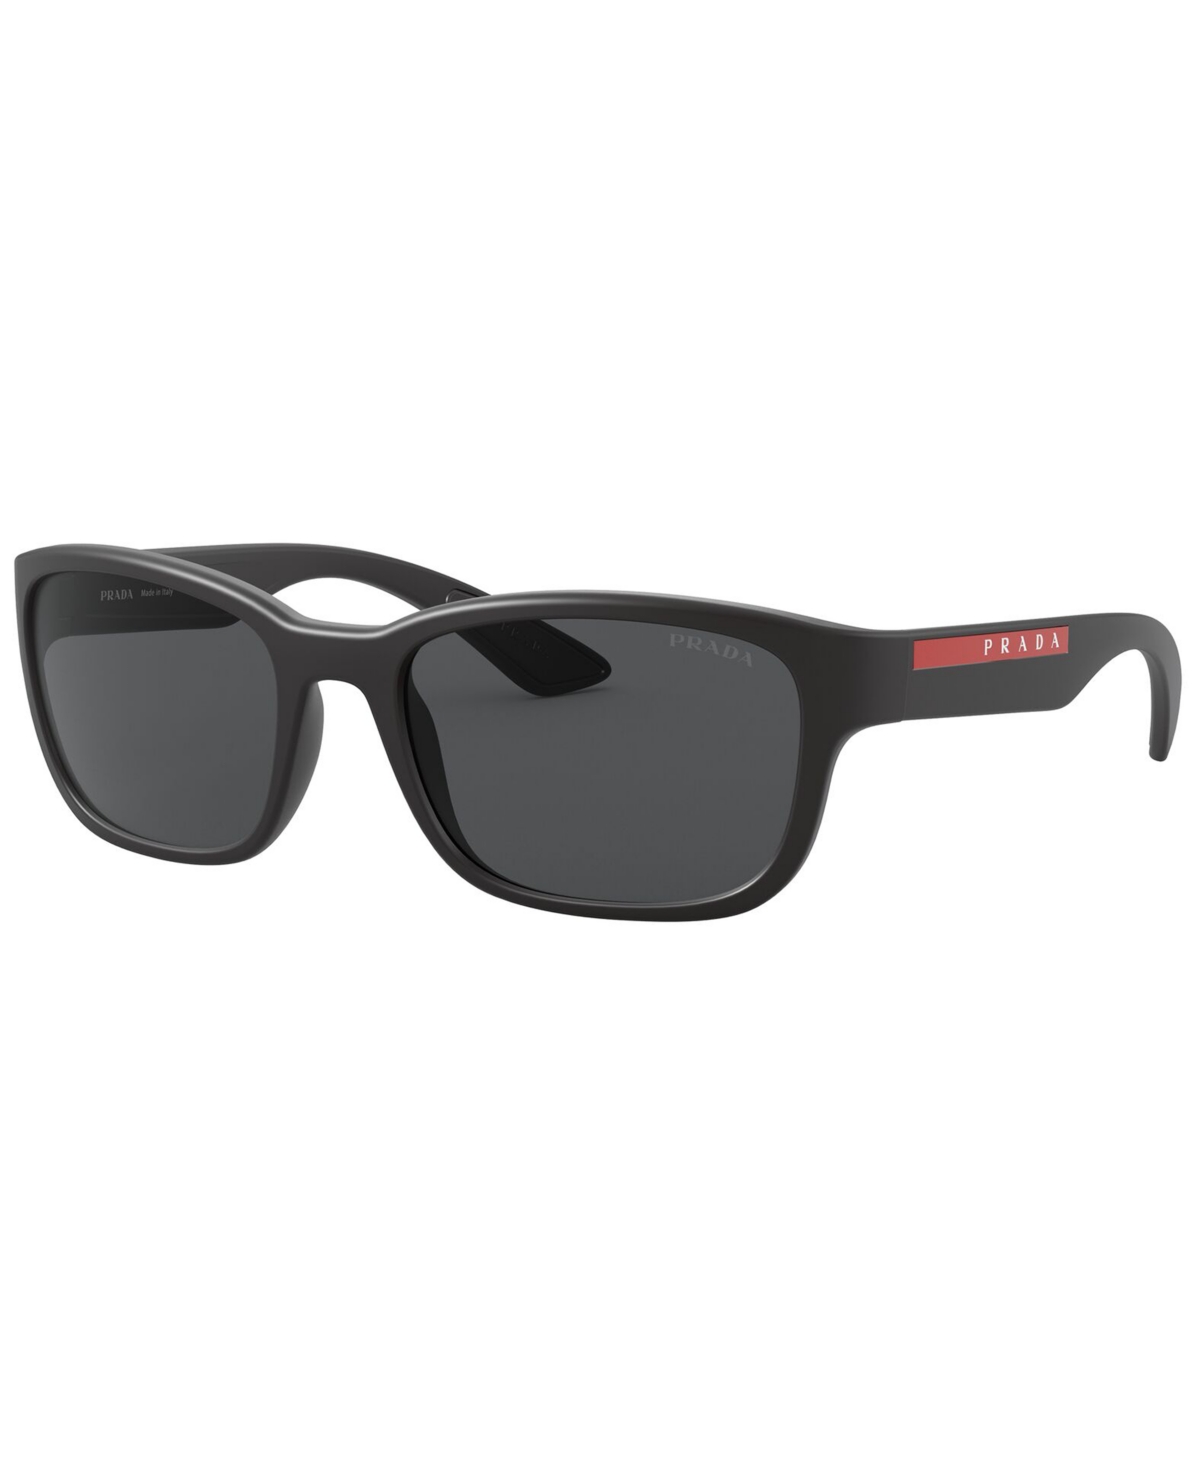 Prada Men's Polarized Sunglasses, Ps 05vs 57 In Black Demishiny,dark Grey